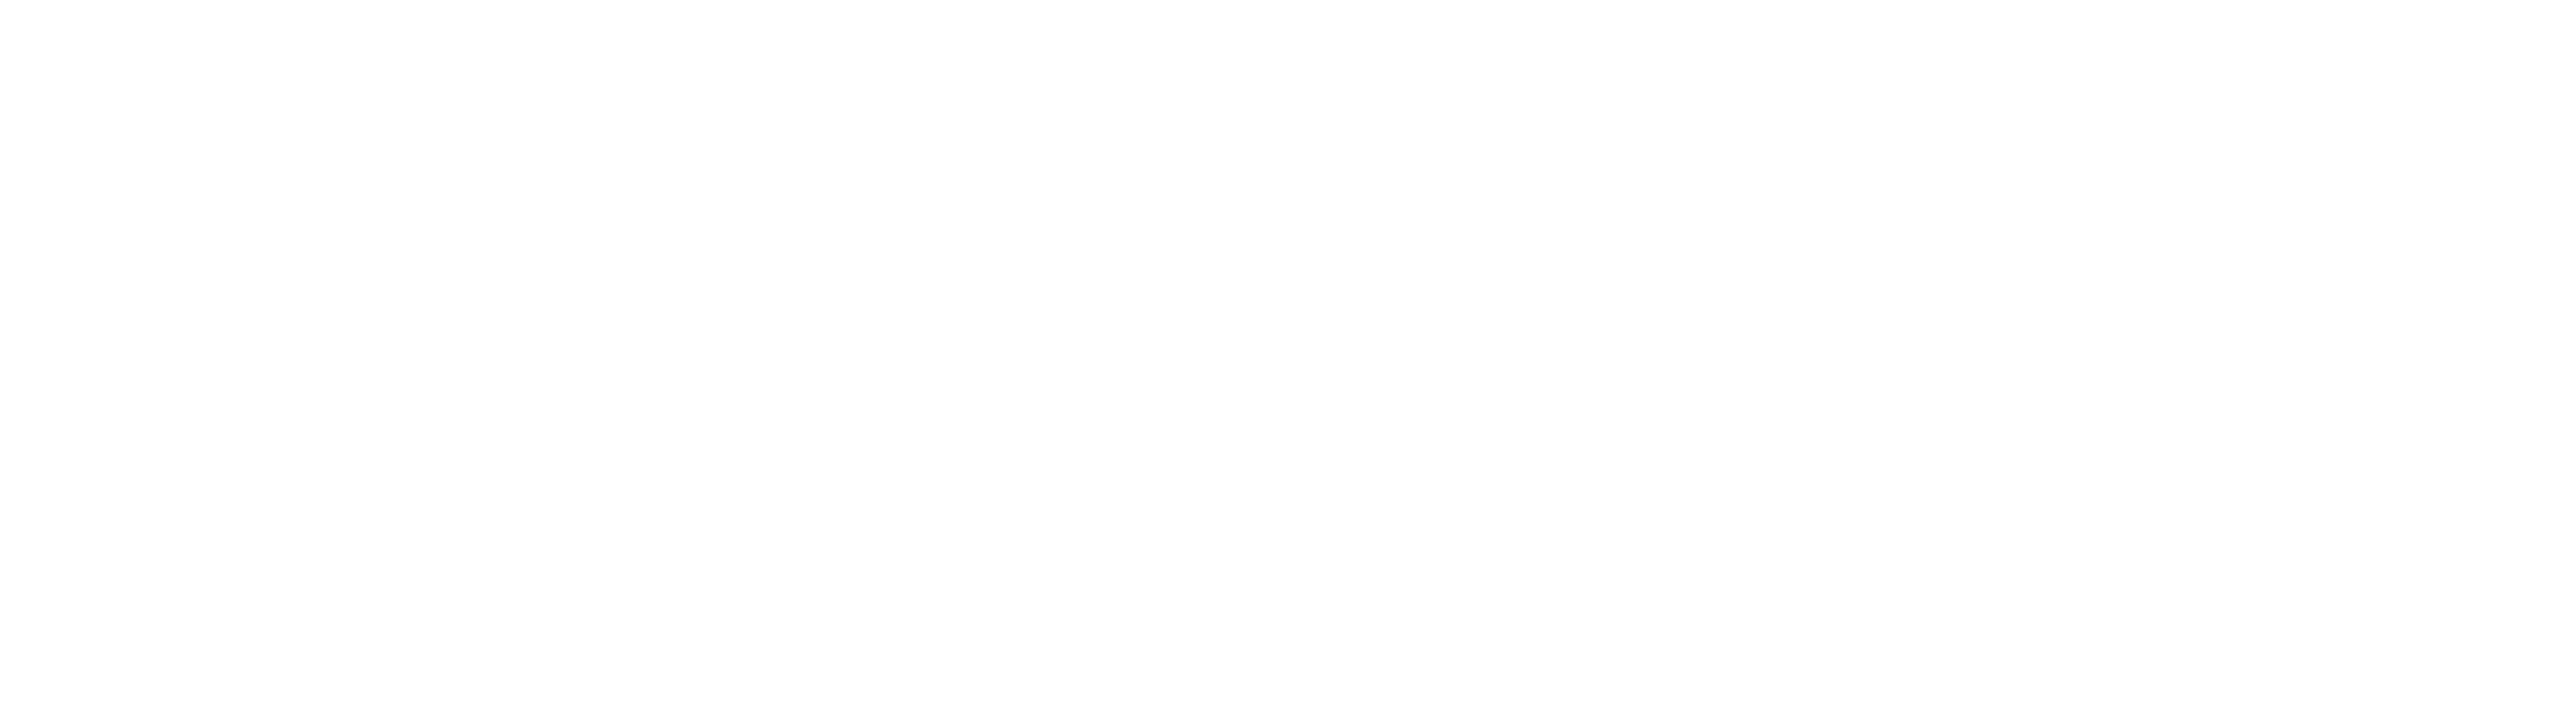 Feria Diocesana LUX MUNDI